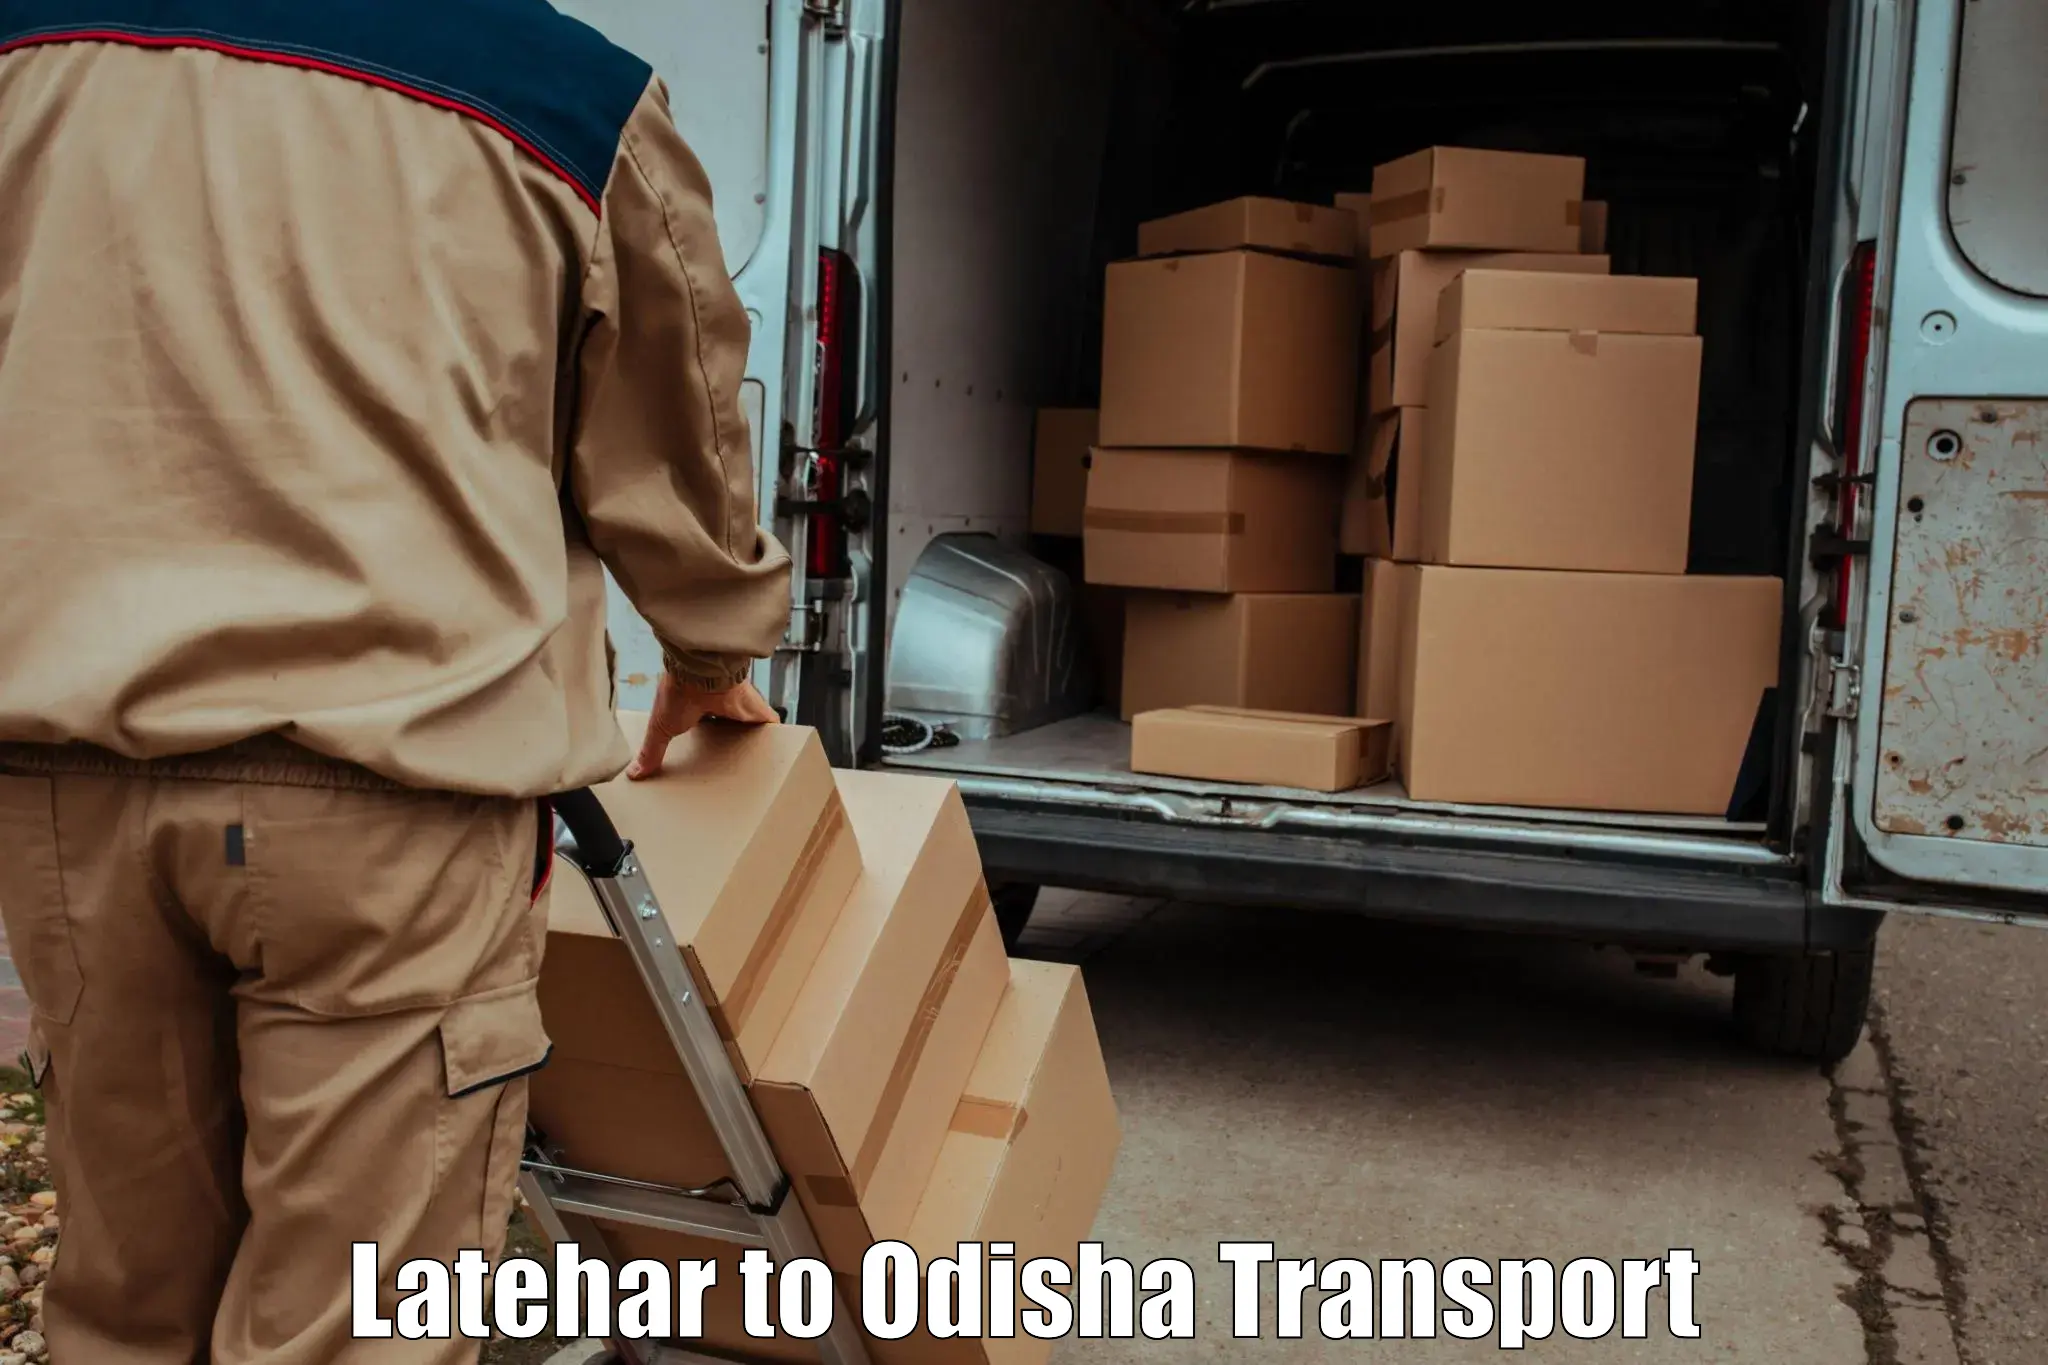 Furniture transport service Latehar to Odisha